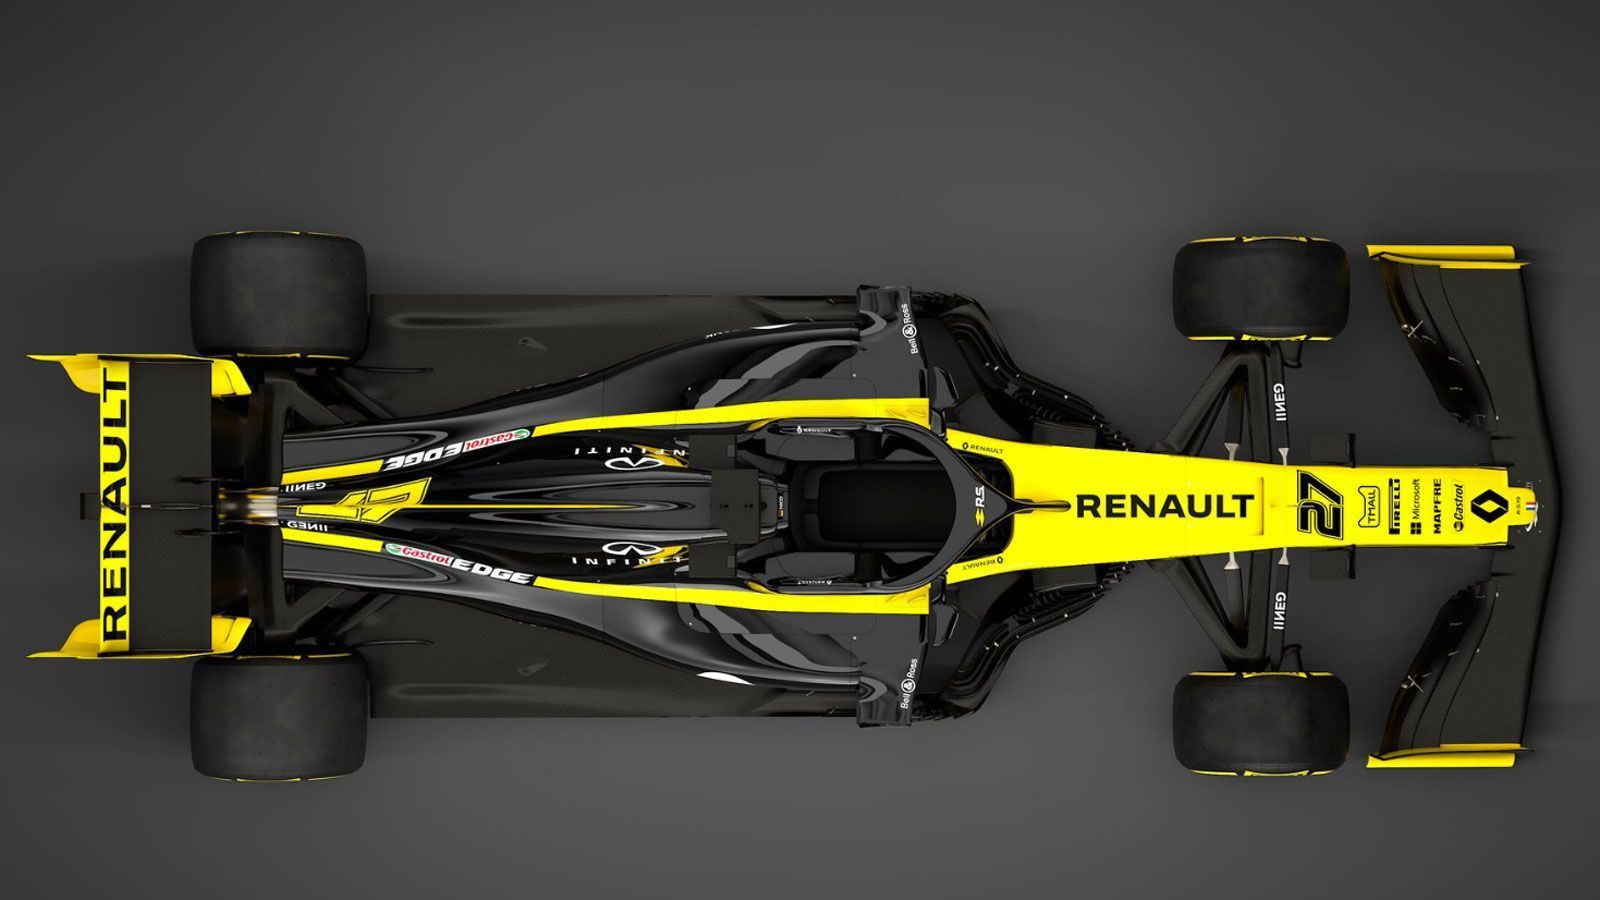 
                <strong>Formel-1-Autos 2019: Renault F1 Team</strong><br>
                Das gute Stück hört auf den Namen R.S.19. Gesteuert wird es von Niko Hülkenberg und dem von Red Bull abgeworbenen Australier Daniel Ricciardo. In Sachen Fahrerpaarung muss sich Renault also hinter keinem Rennstall verstecken.
              